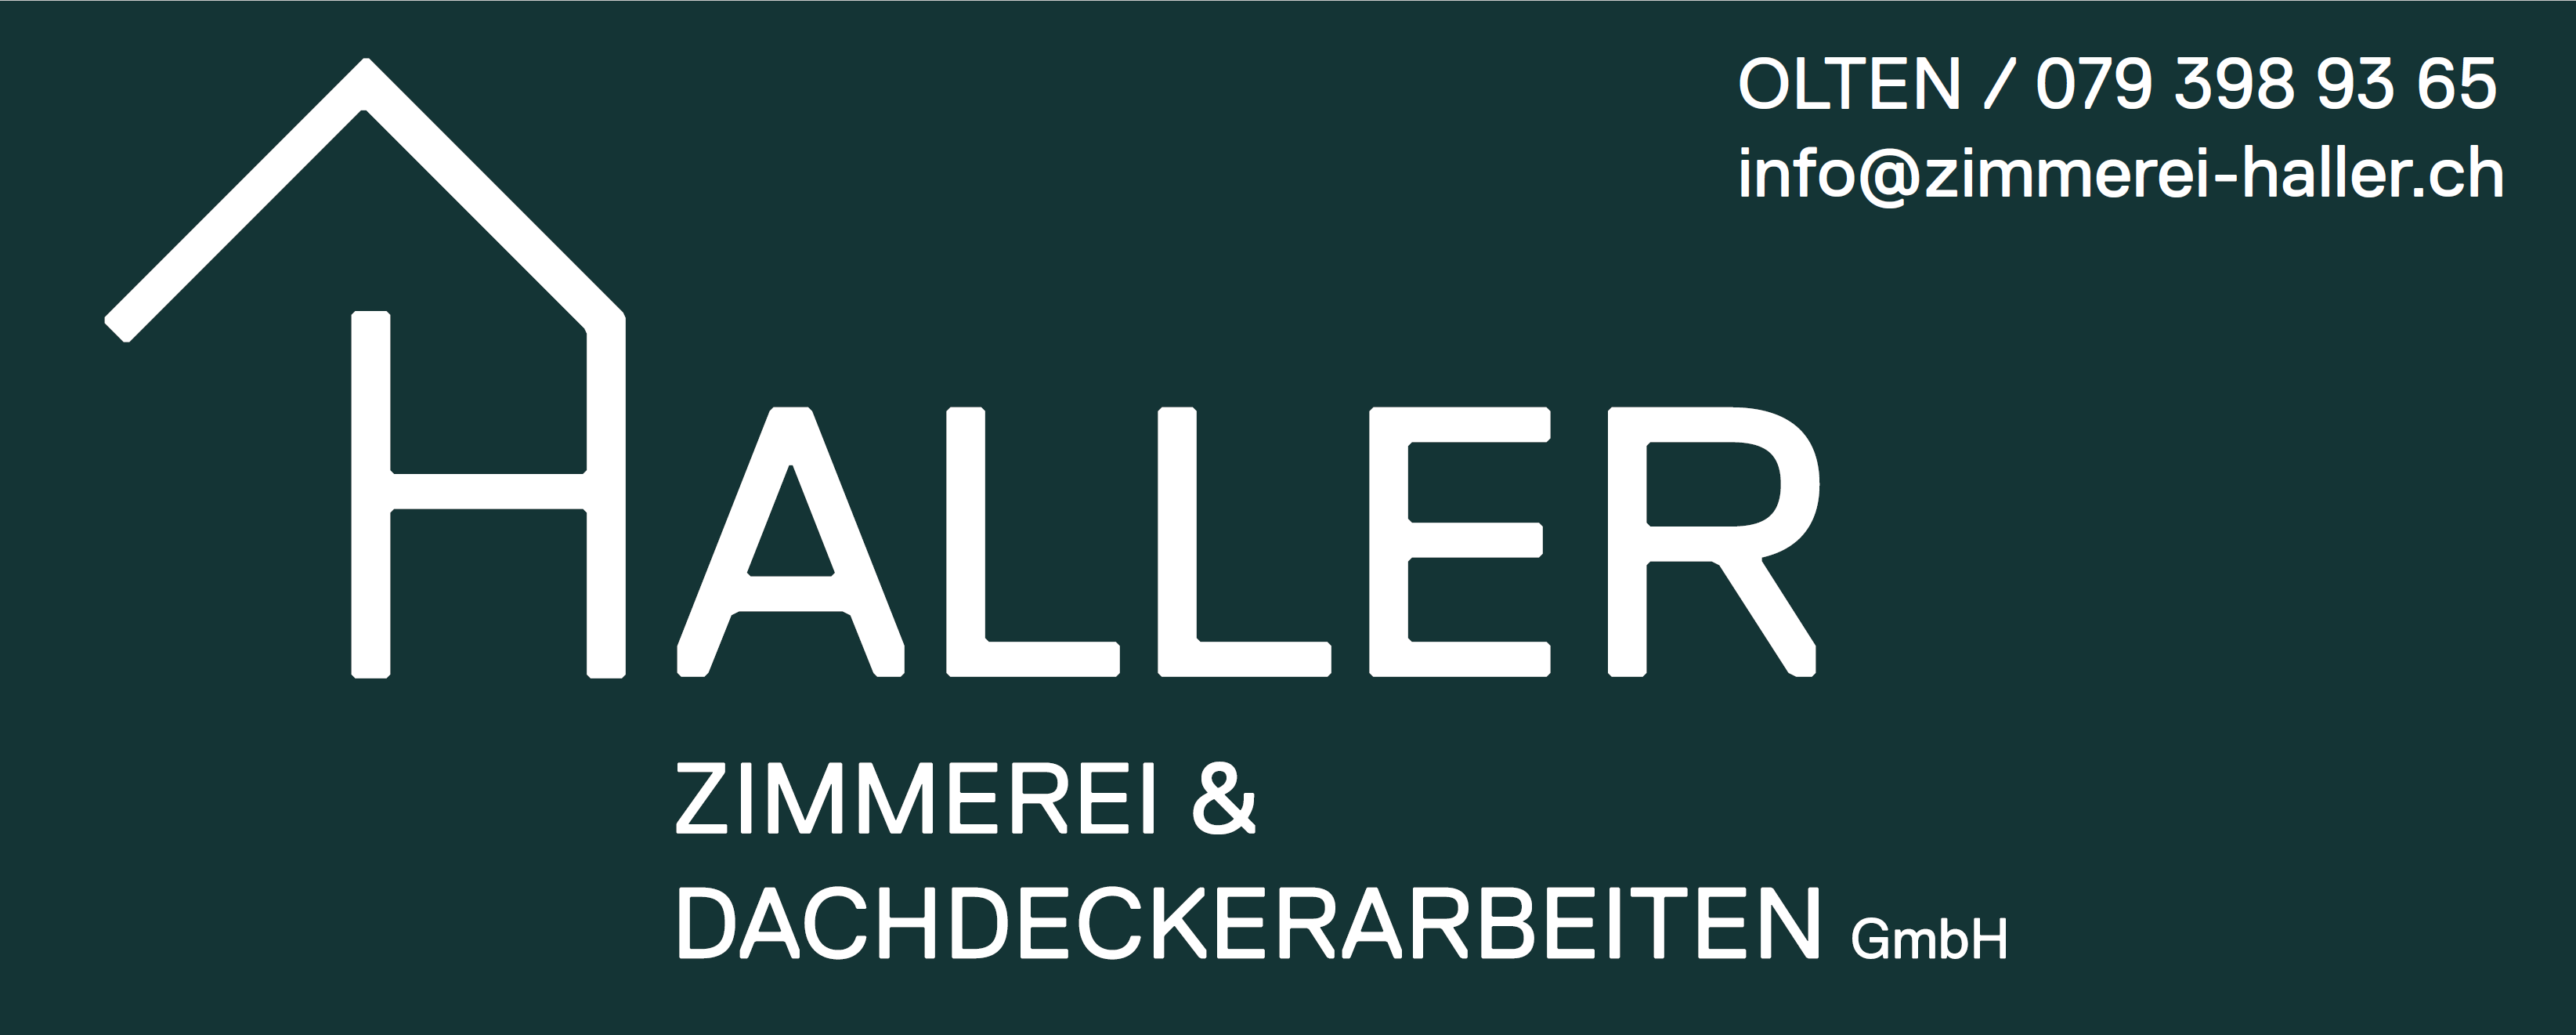 DOminik Haller Zimmerei & Dachdeckerarbeiten GmbH